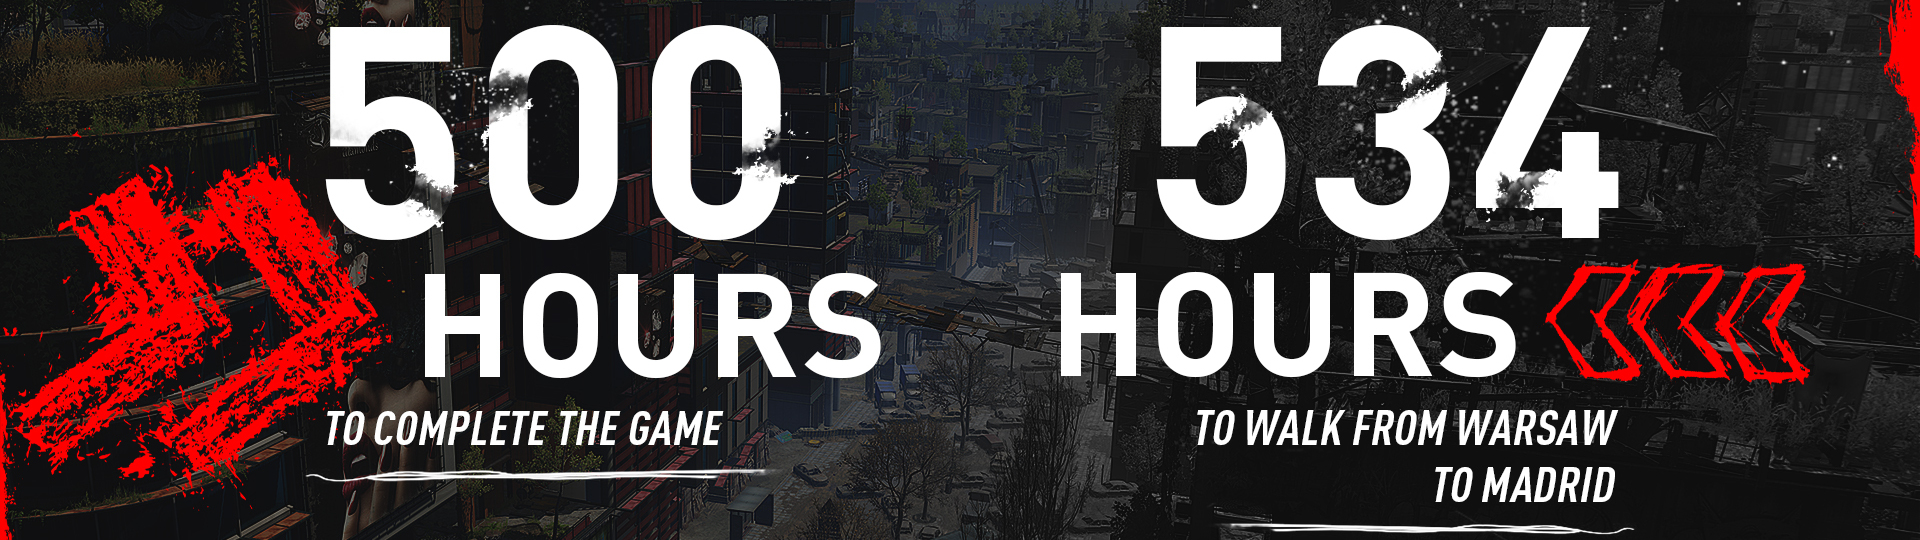 Dohrát Dying Light 2 Stay Human údajně zabere přes 500 hodin | Novinky